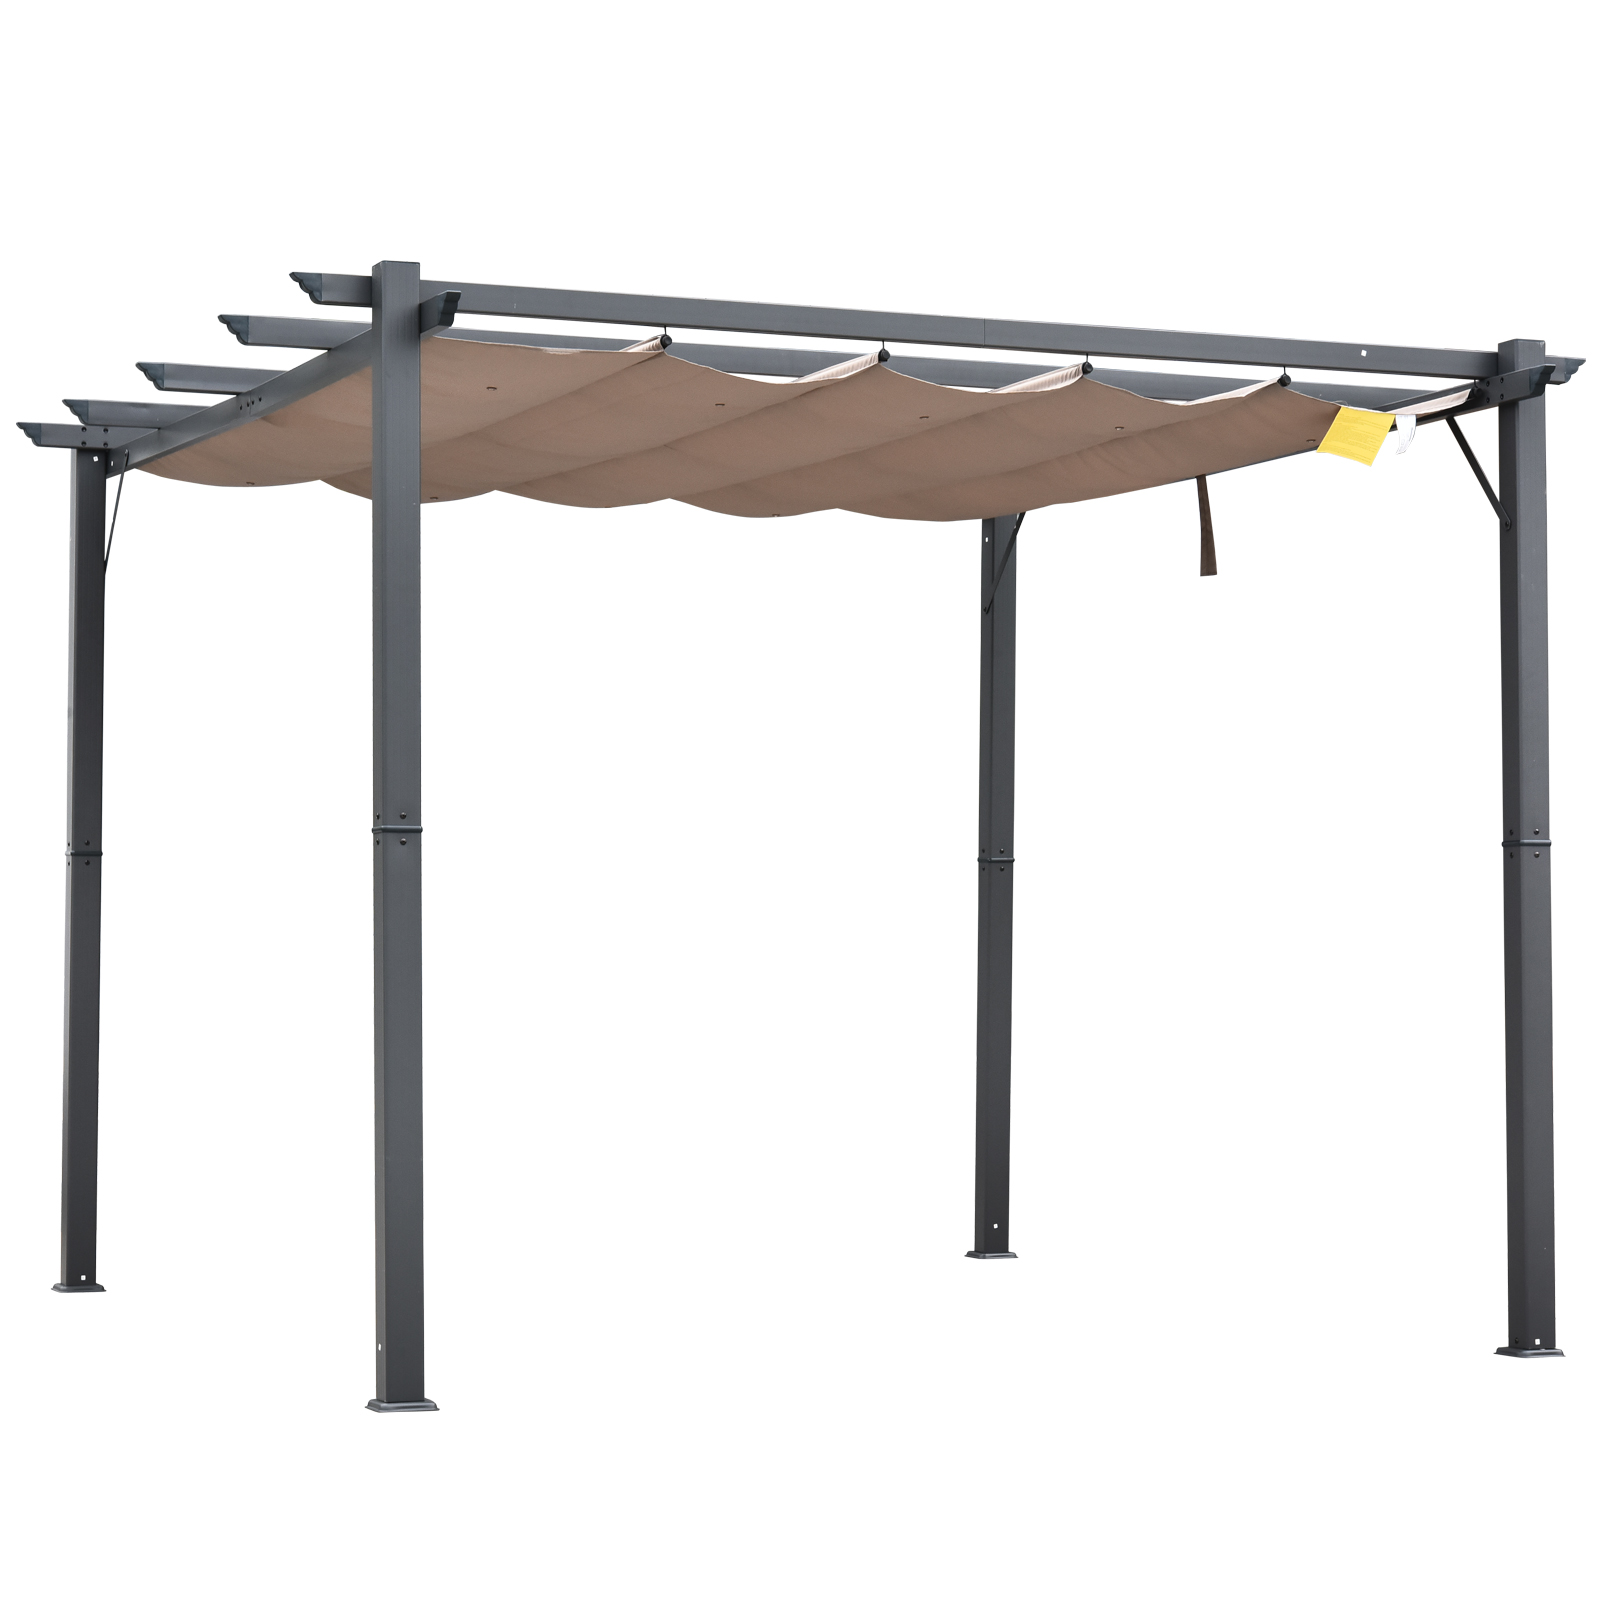 Outsunny 10' x 10' Aluminum Pergola Gazebo Garden Sunshade Retractable Canopy, Brown